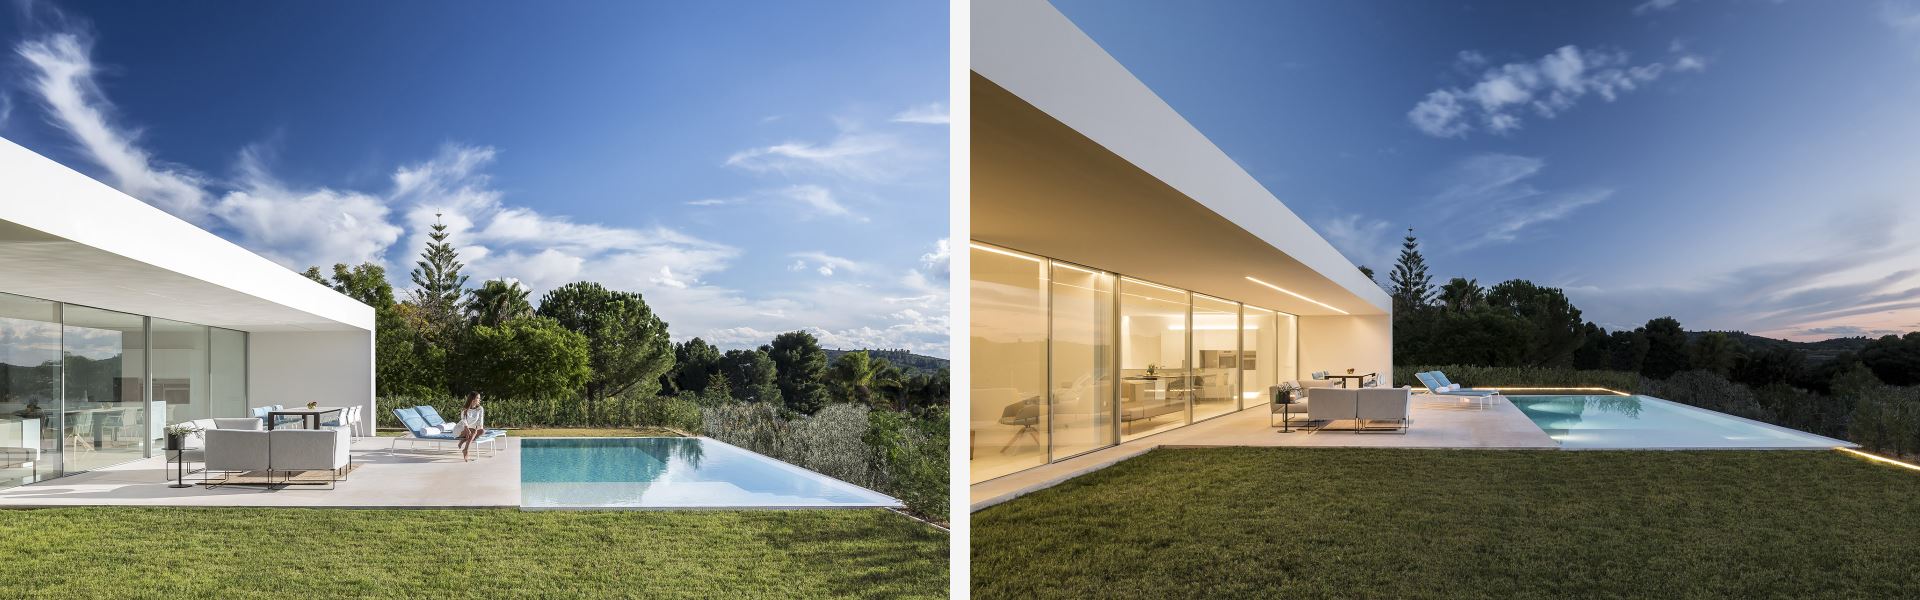 House design in Valencia - Gallardo Llopis Architecture